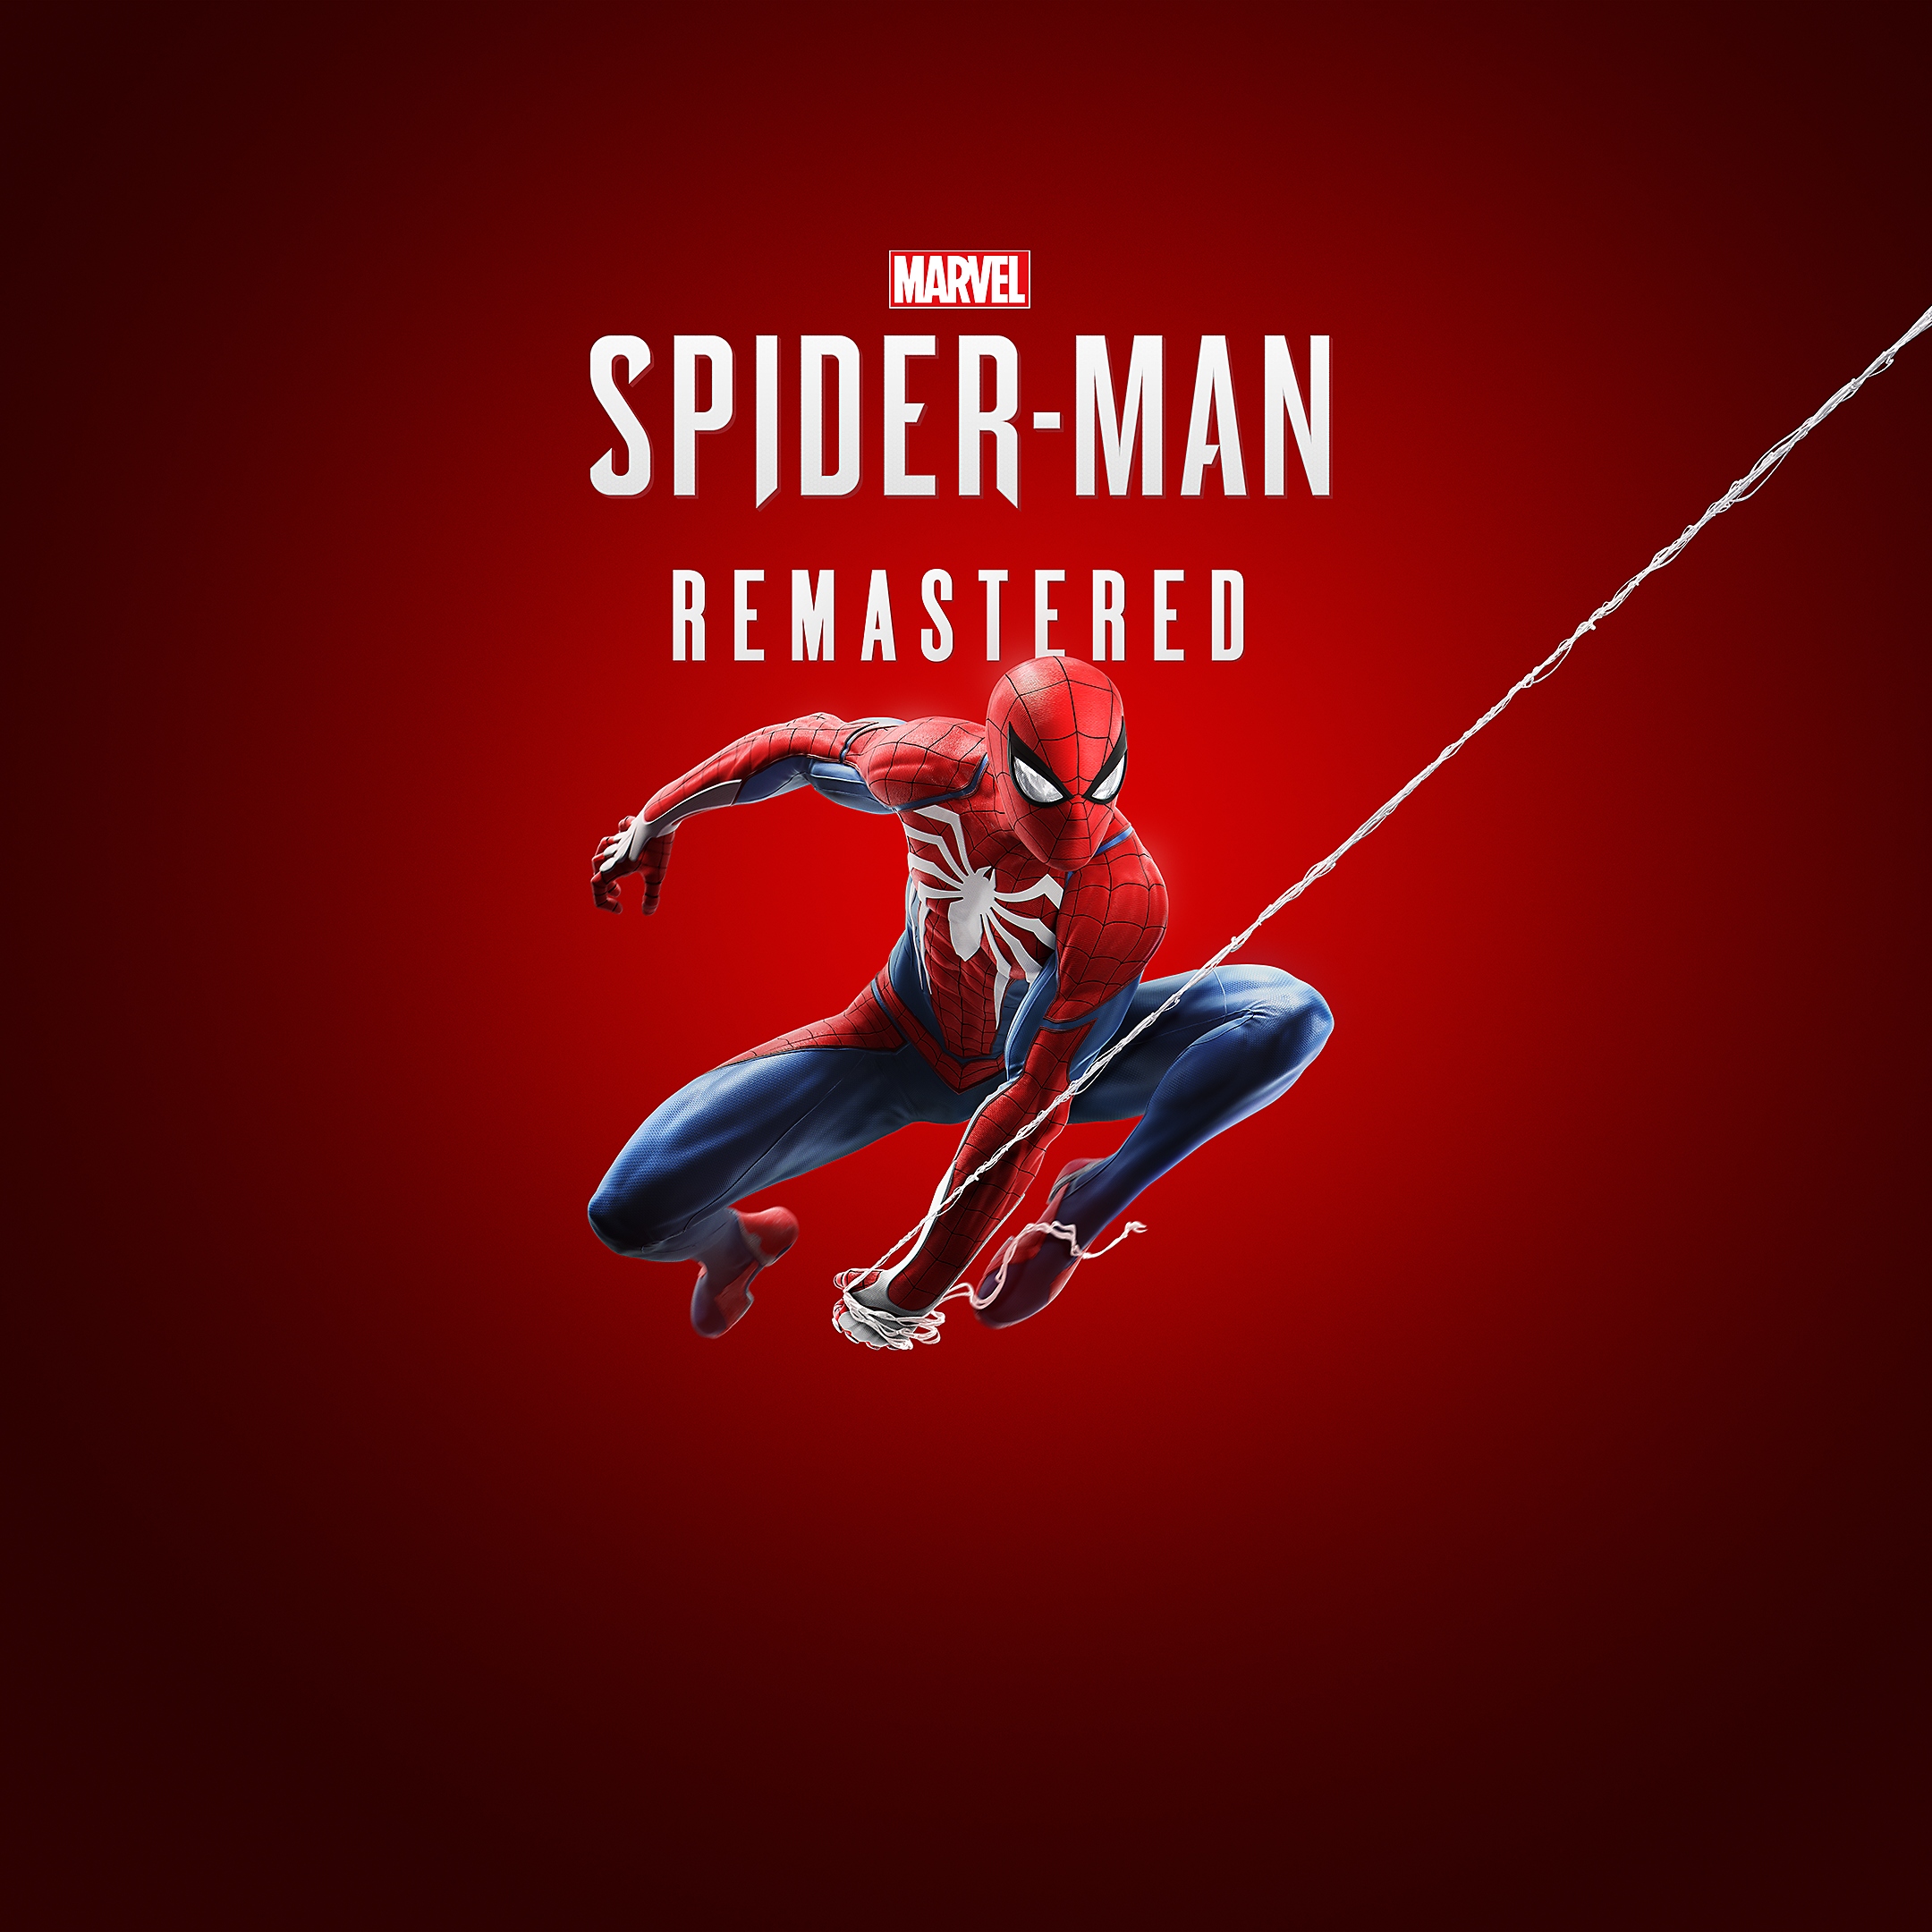 Thumbnail de Spider-Man Remasterizado